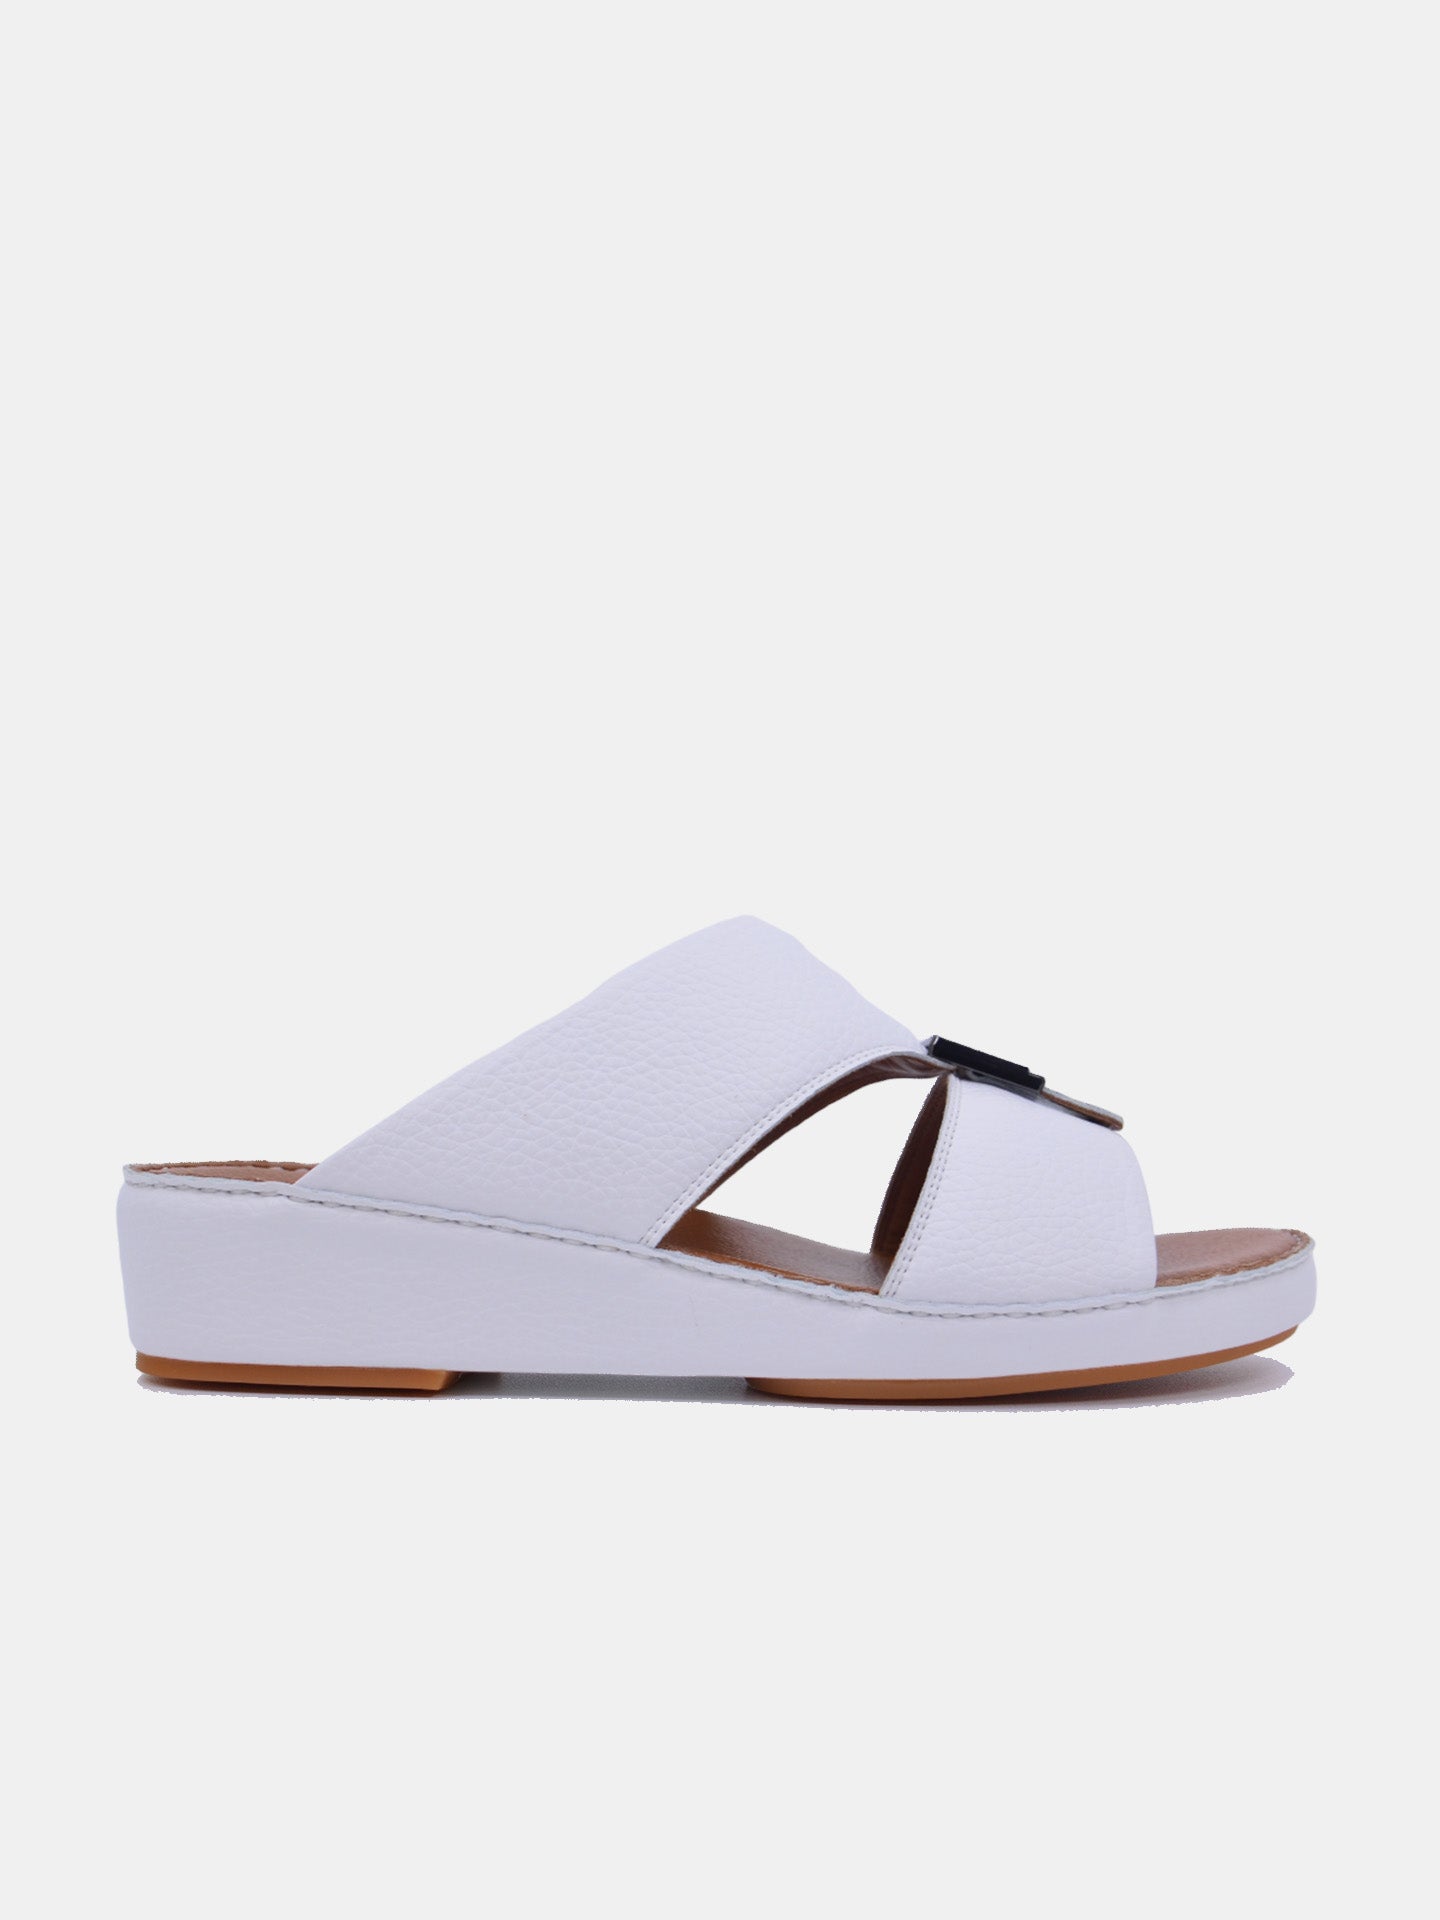 Barjeel Uno V-133 Men's Arabic Sandals #color_White